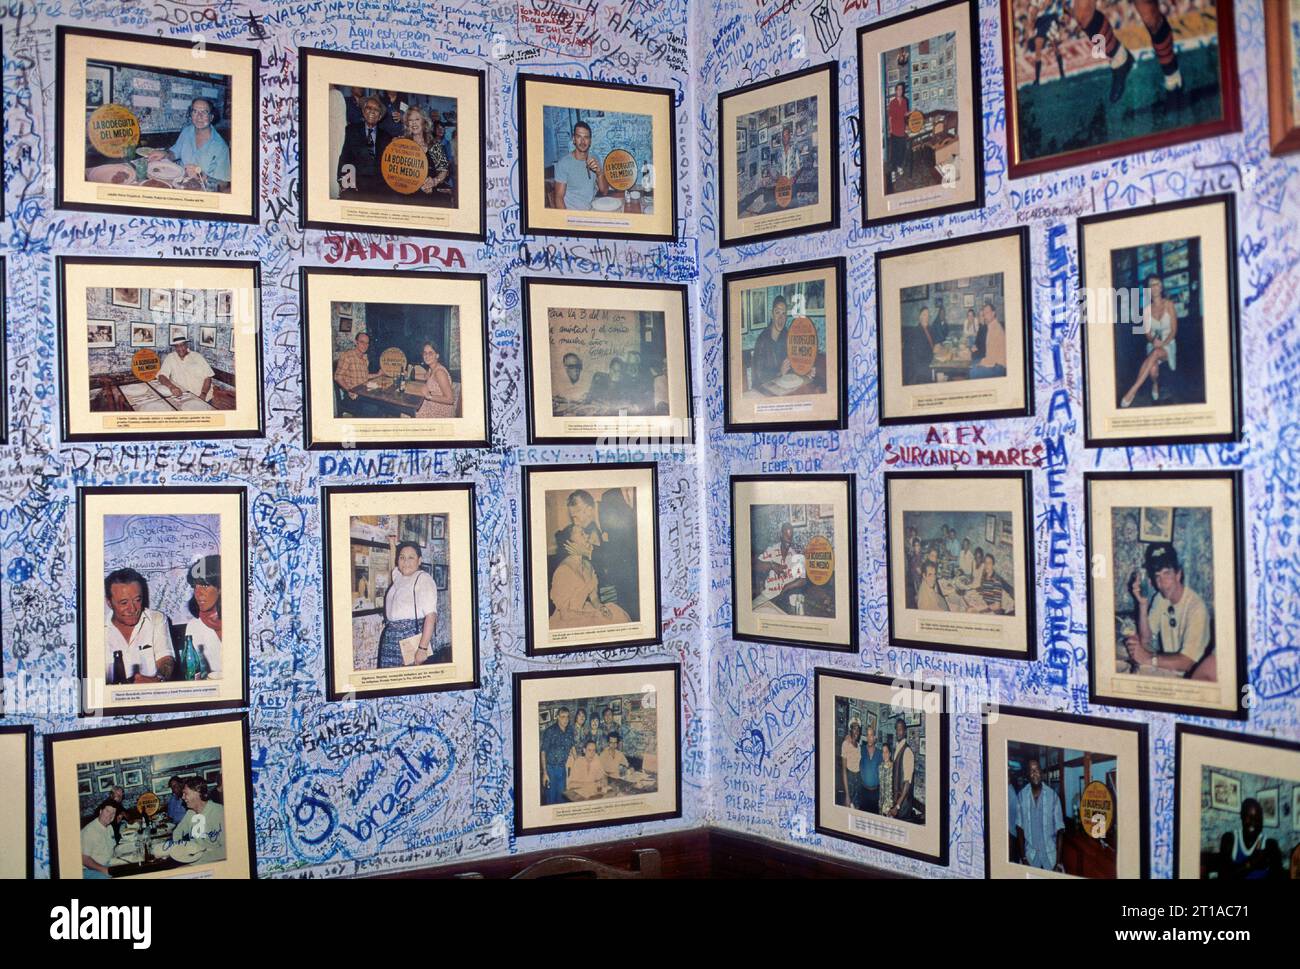 Cuba Havana La Bodeguita del Medio das Innere des Ortes mit den Wänden bedeckt mit Fotos von illustren Besuchern und Signaturen von Besuchern Stockfoto